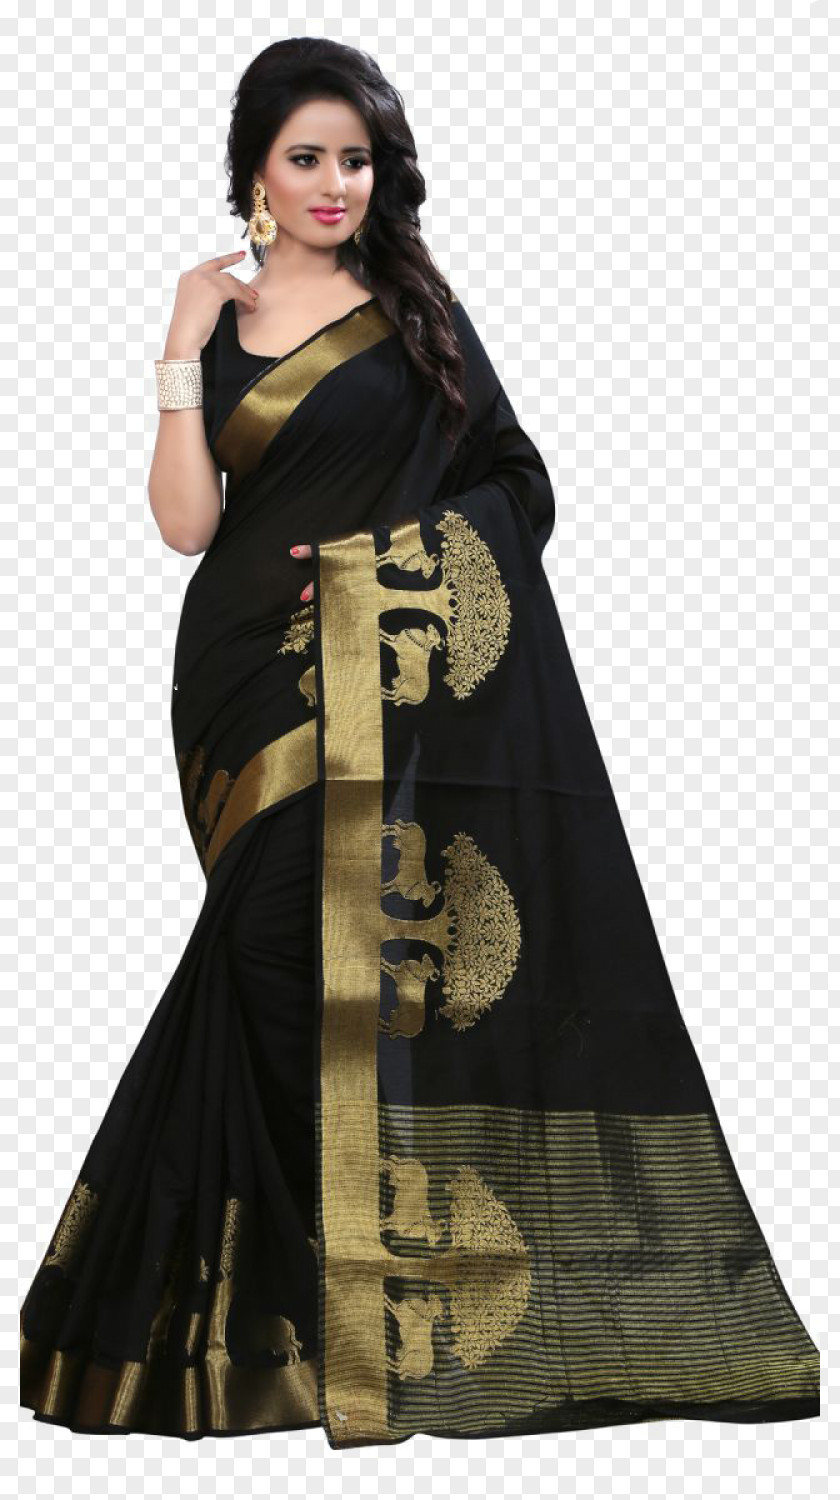 Kalamkari Banarasi Sari Silk Clothing Shopping PNG